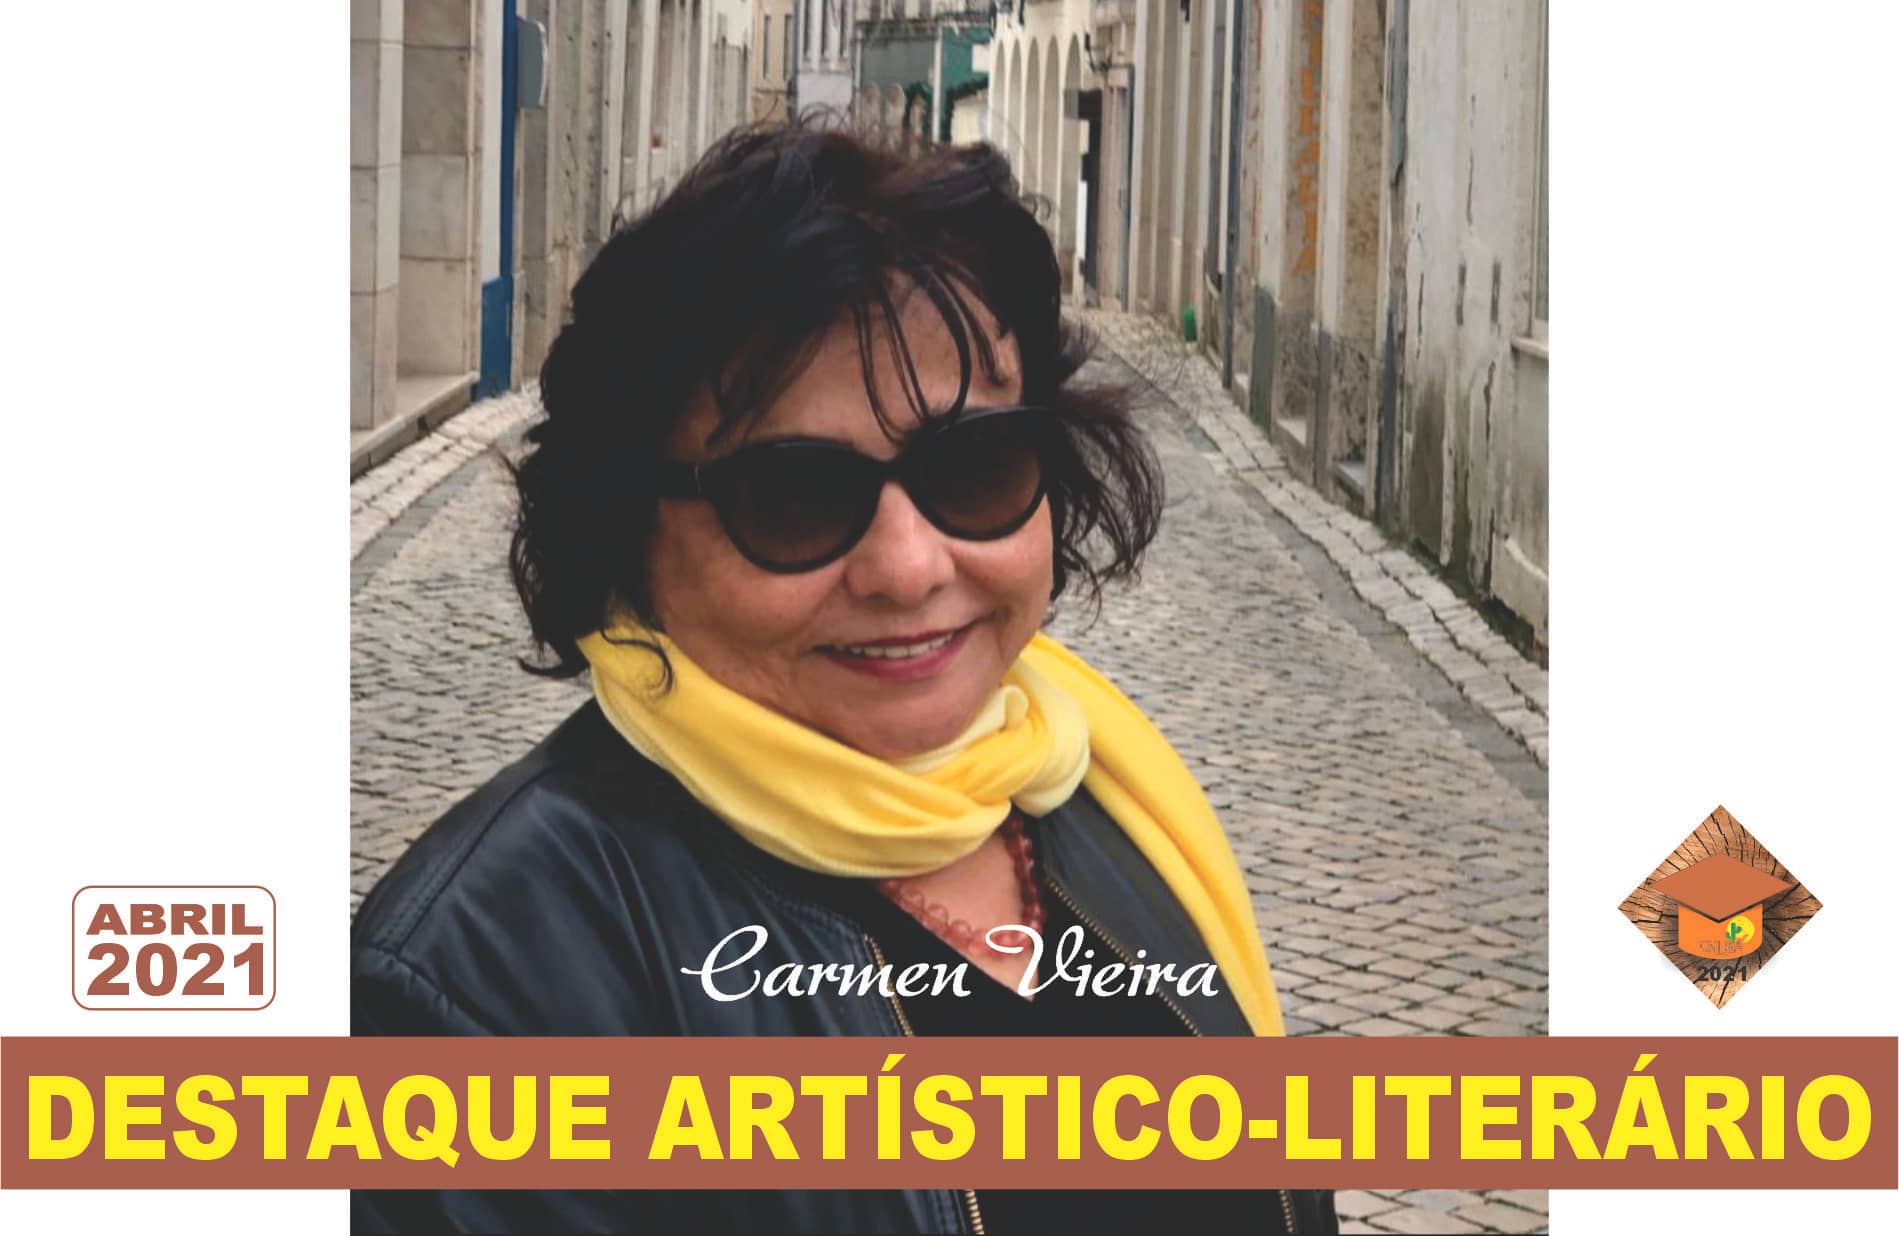 Carmen Vieira 
Destaque literário Abril/2021